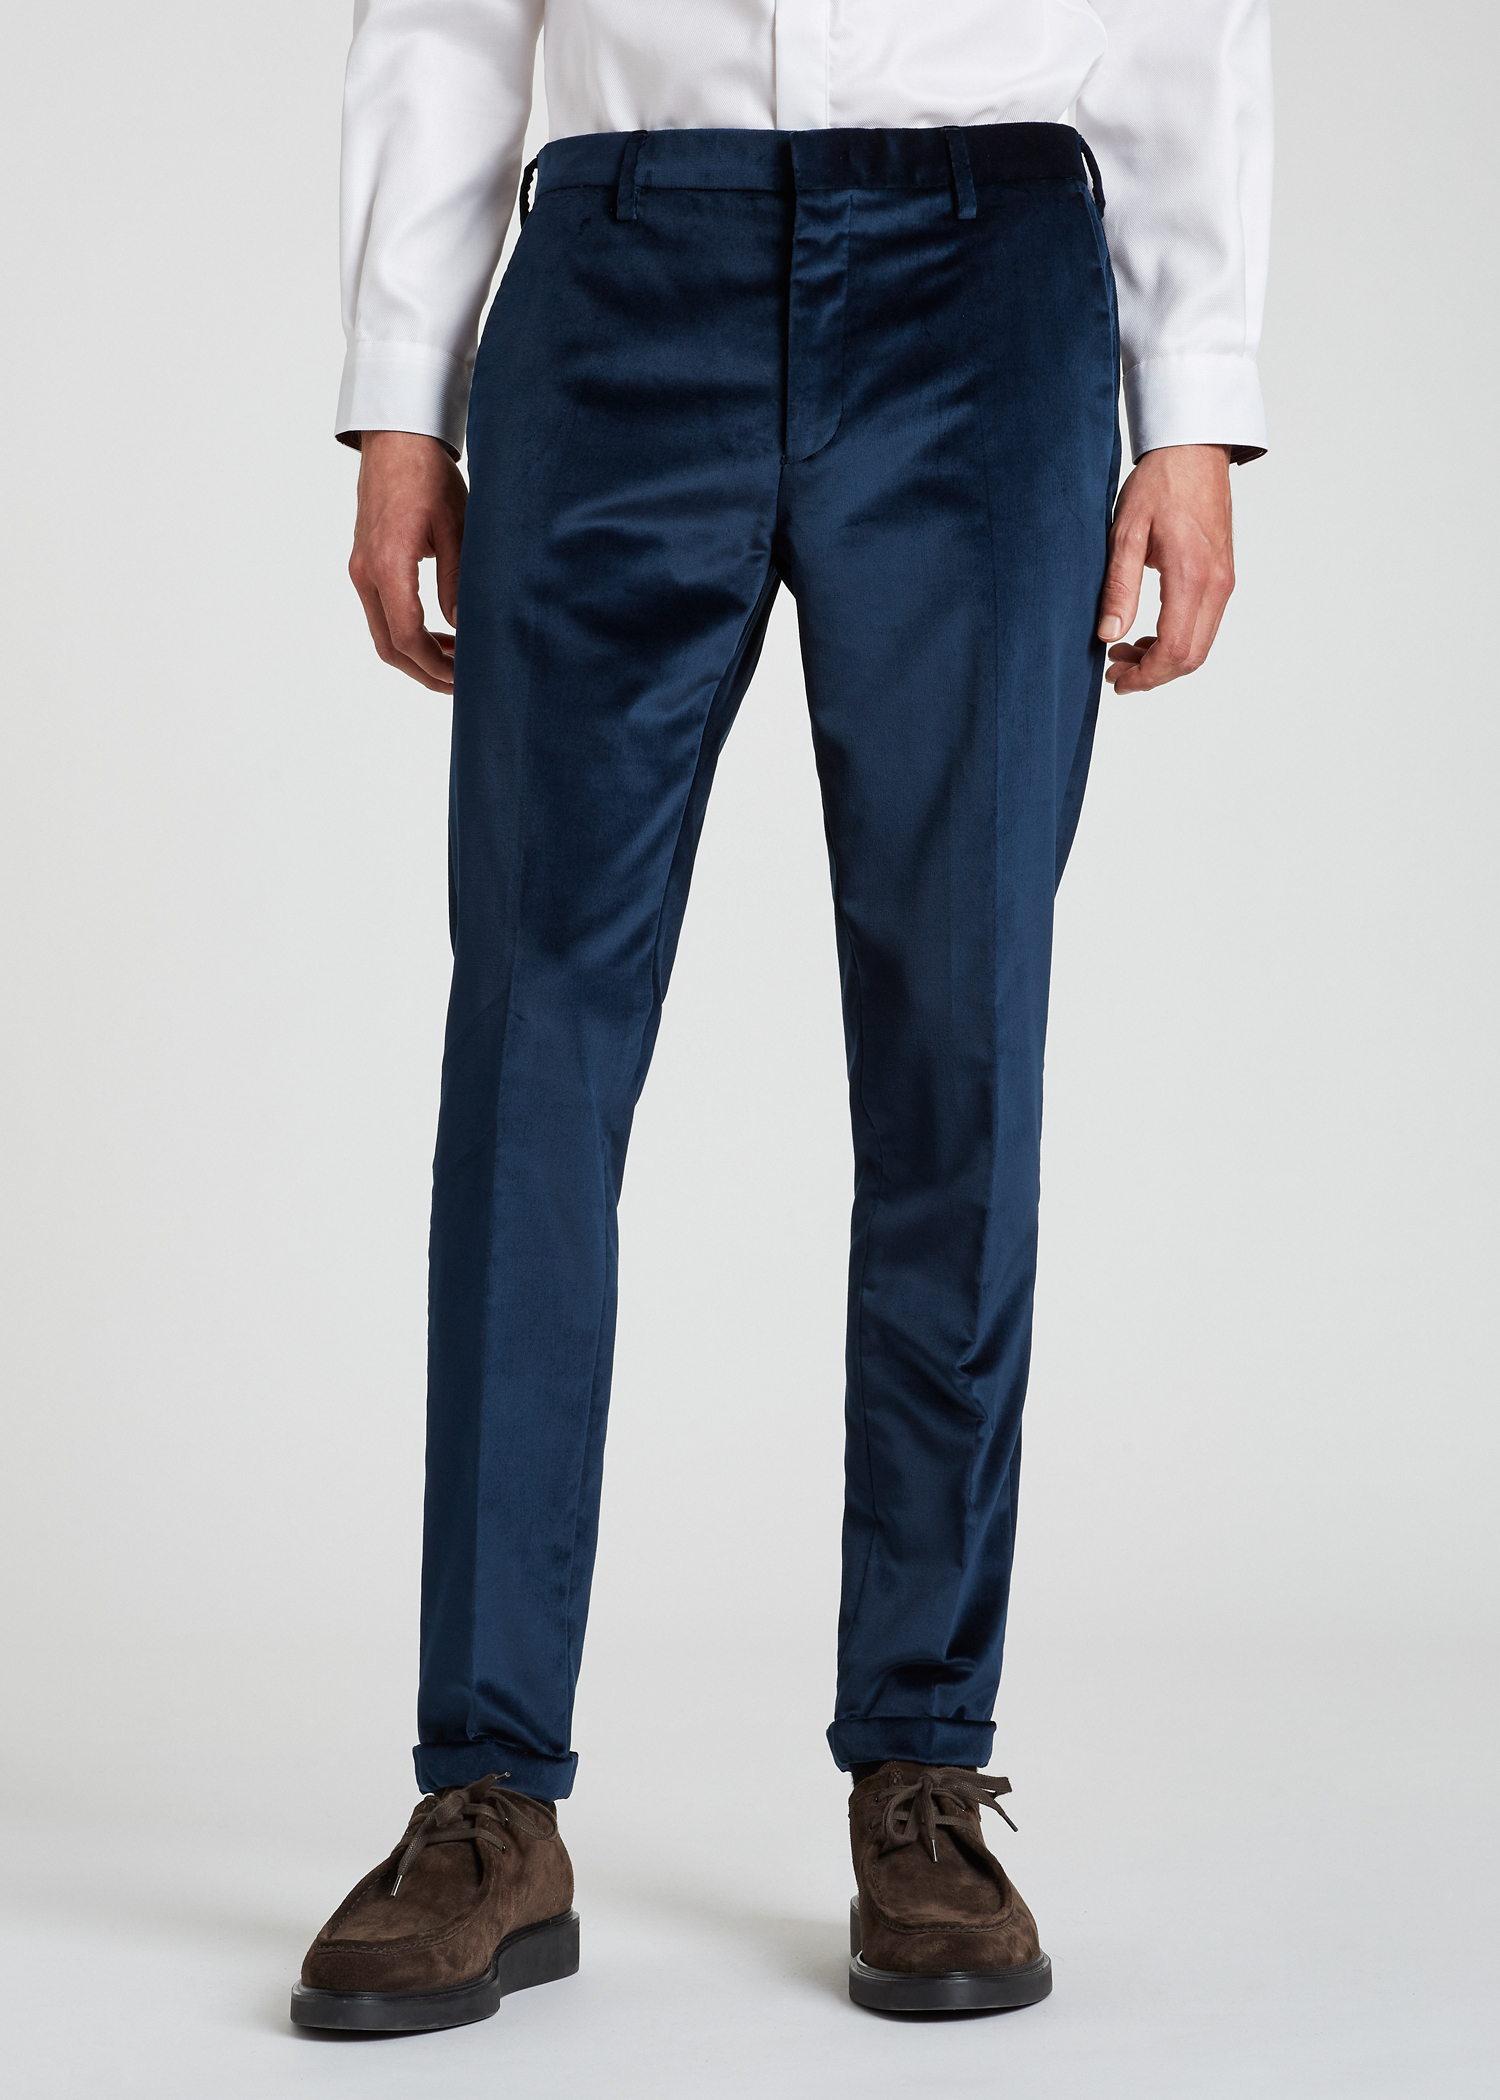 PAUL SMITH SlimFit Linen Suit Trousers for Men  MR PORTER